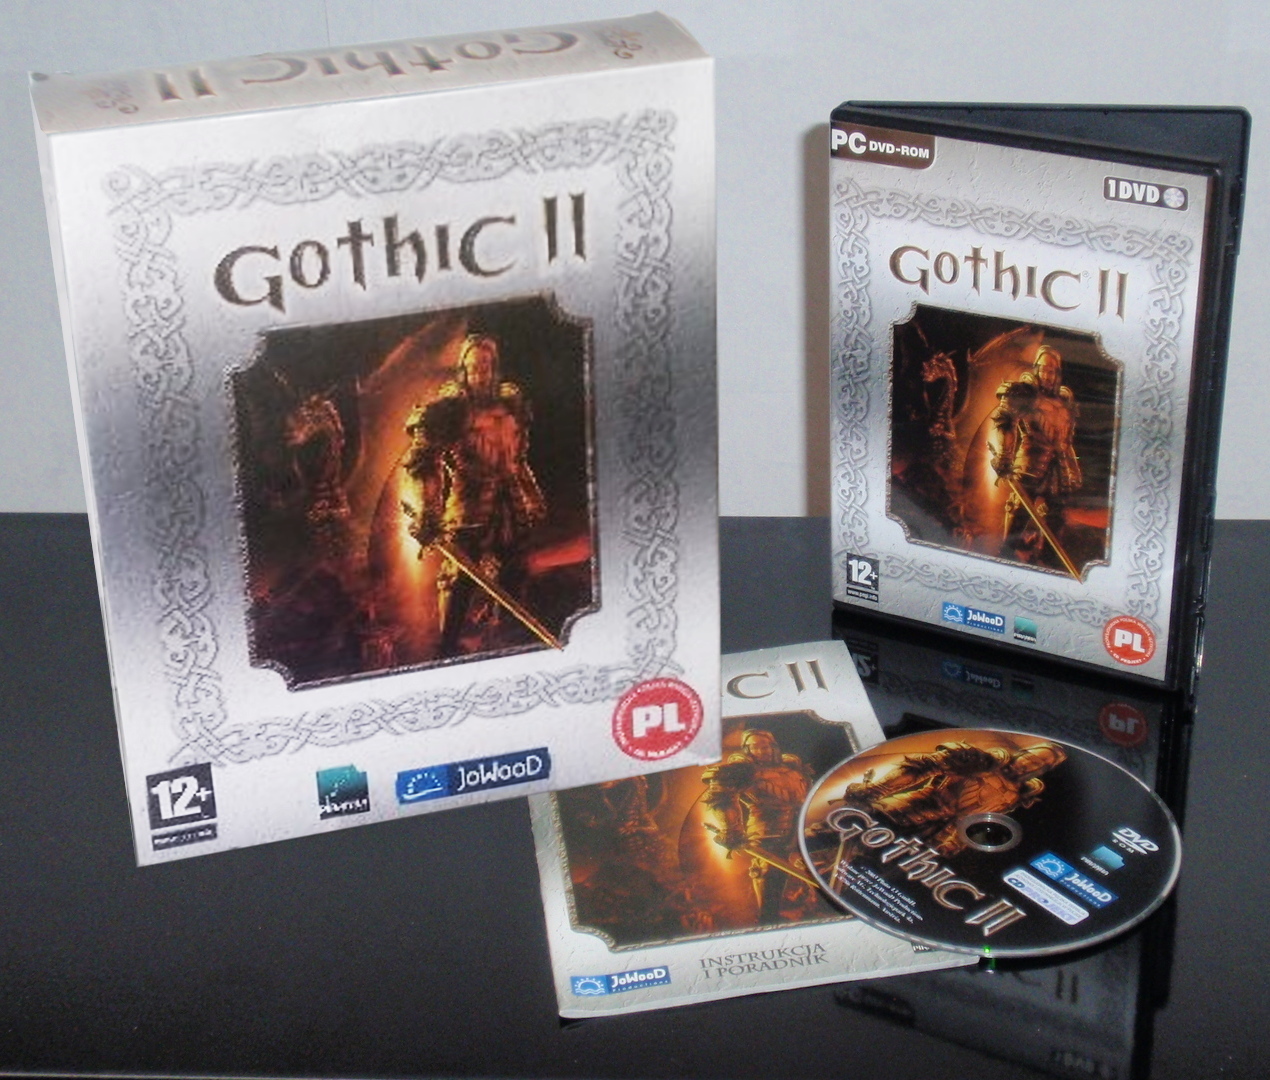 Biedronkowa reedycja Gothic 2